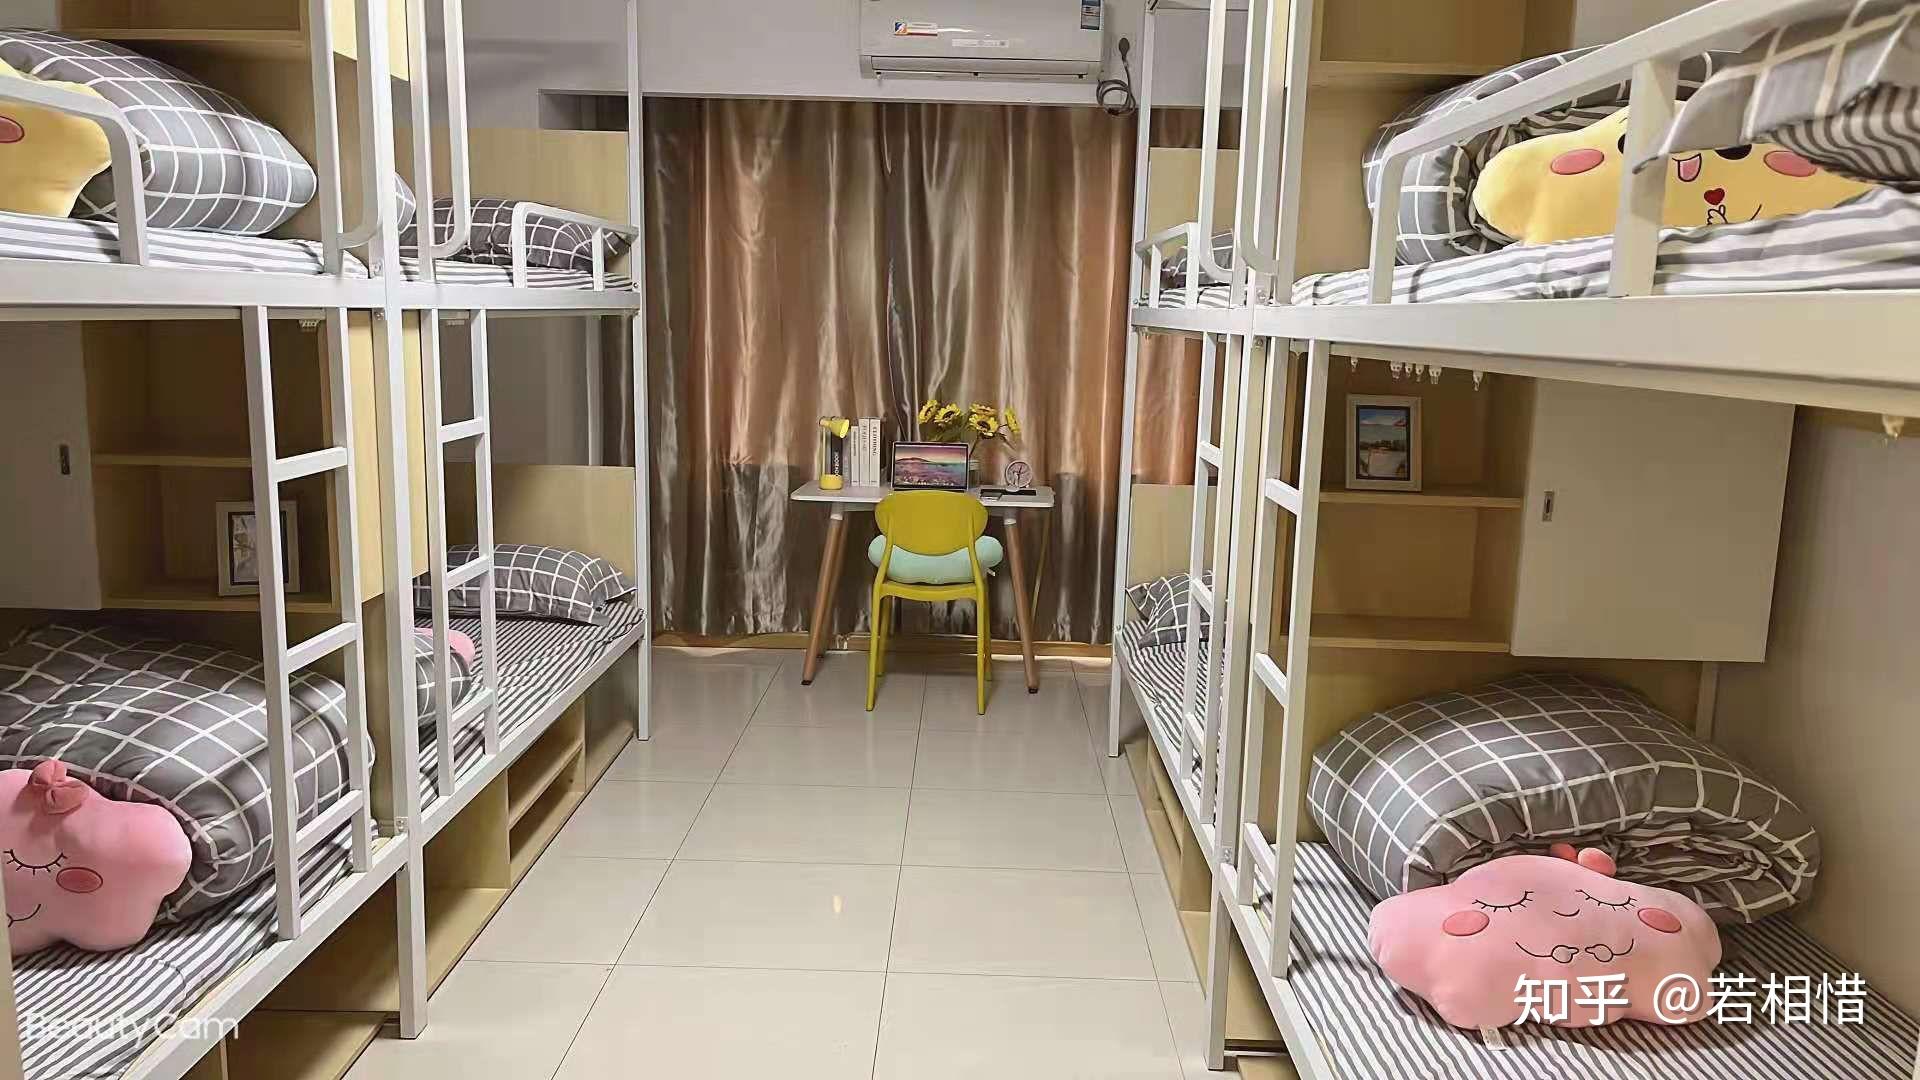 旺角3層「碌架床」床位出租實況 床位堆滿爐具衣物15人用1廁 - 香港經濟日報 - TOPick - 親子 - 休閒消費 - D180313